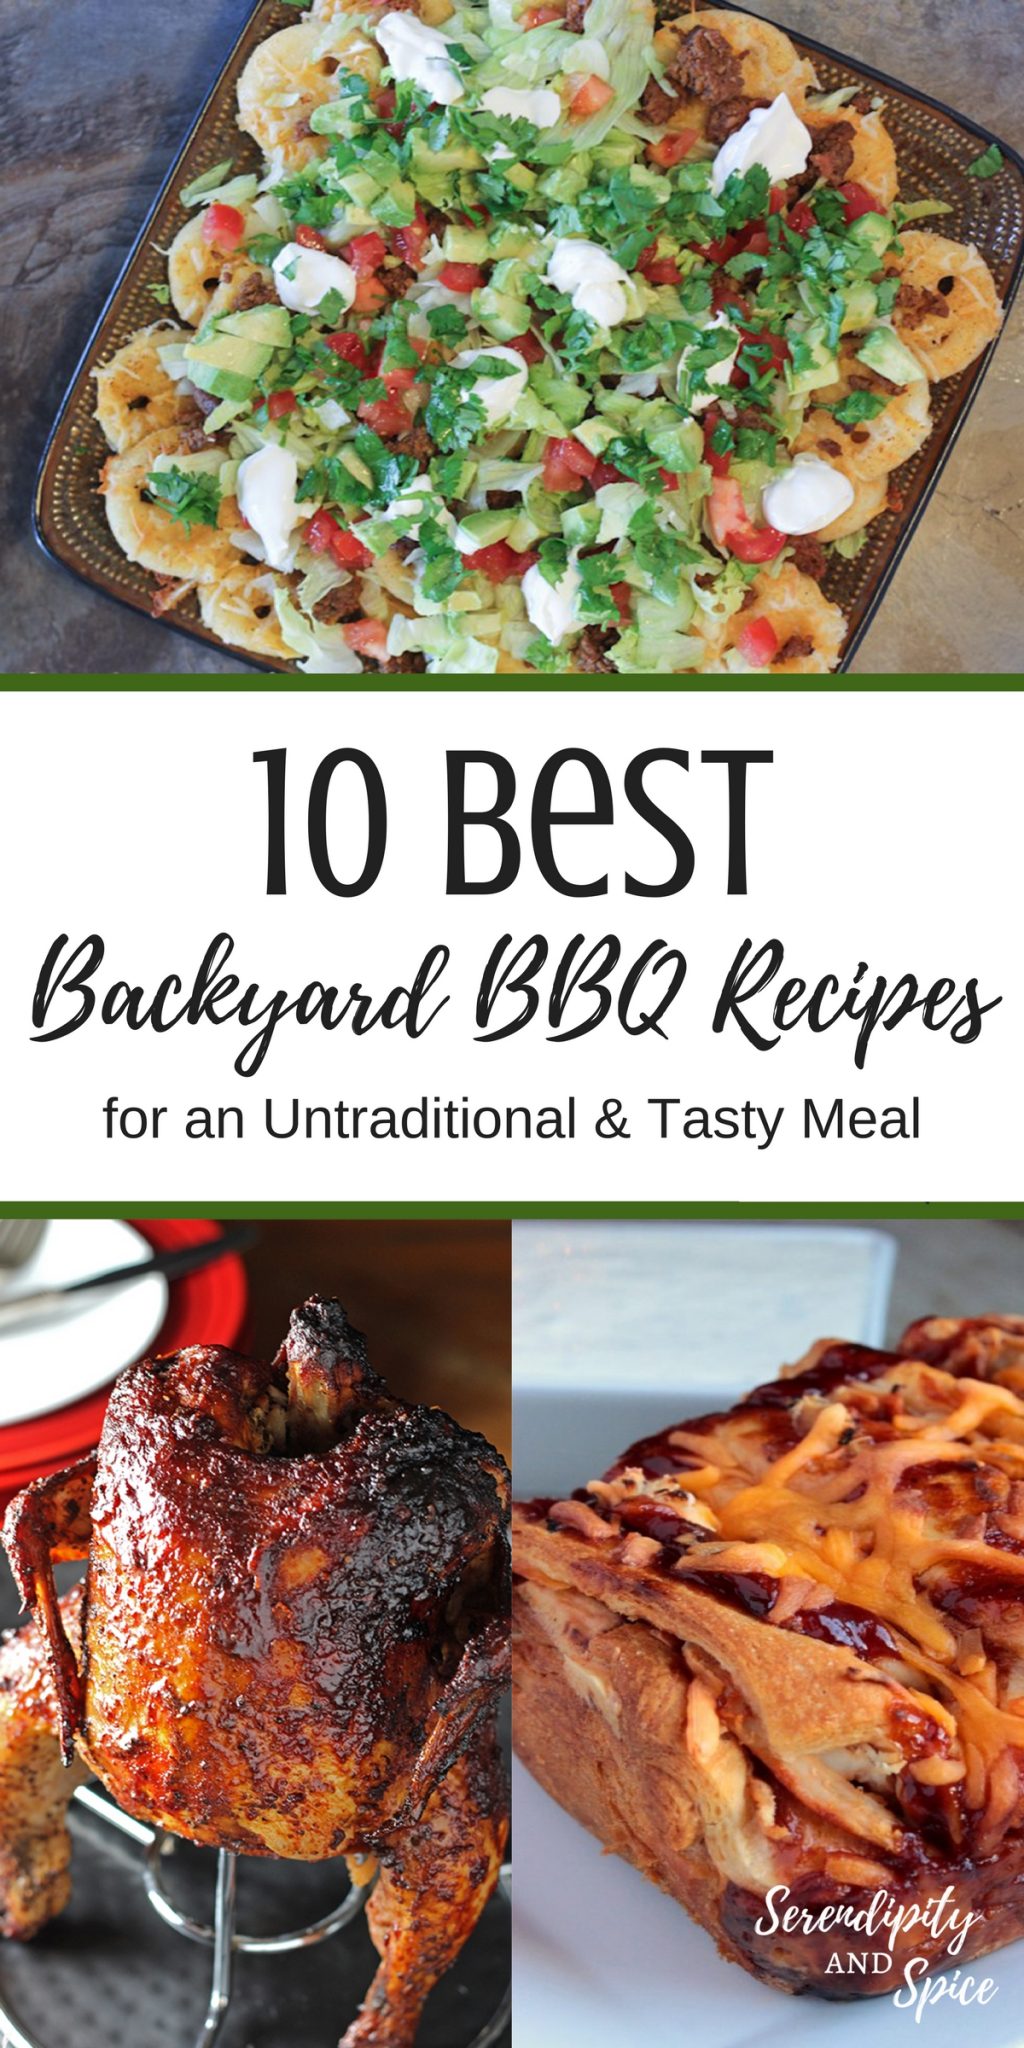 10 Best Backyard BBQ Recipes